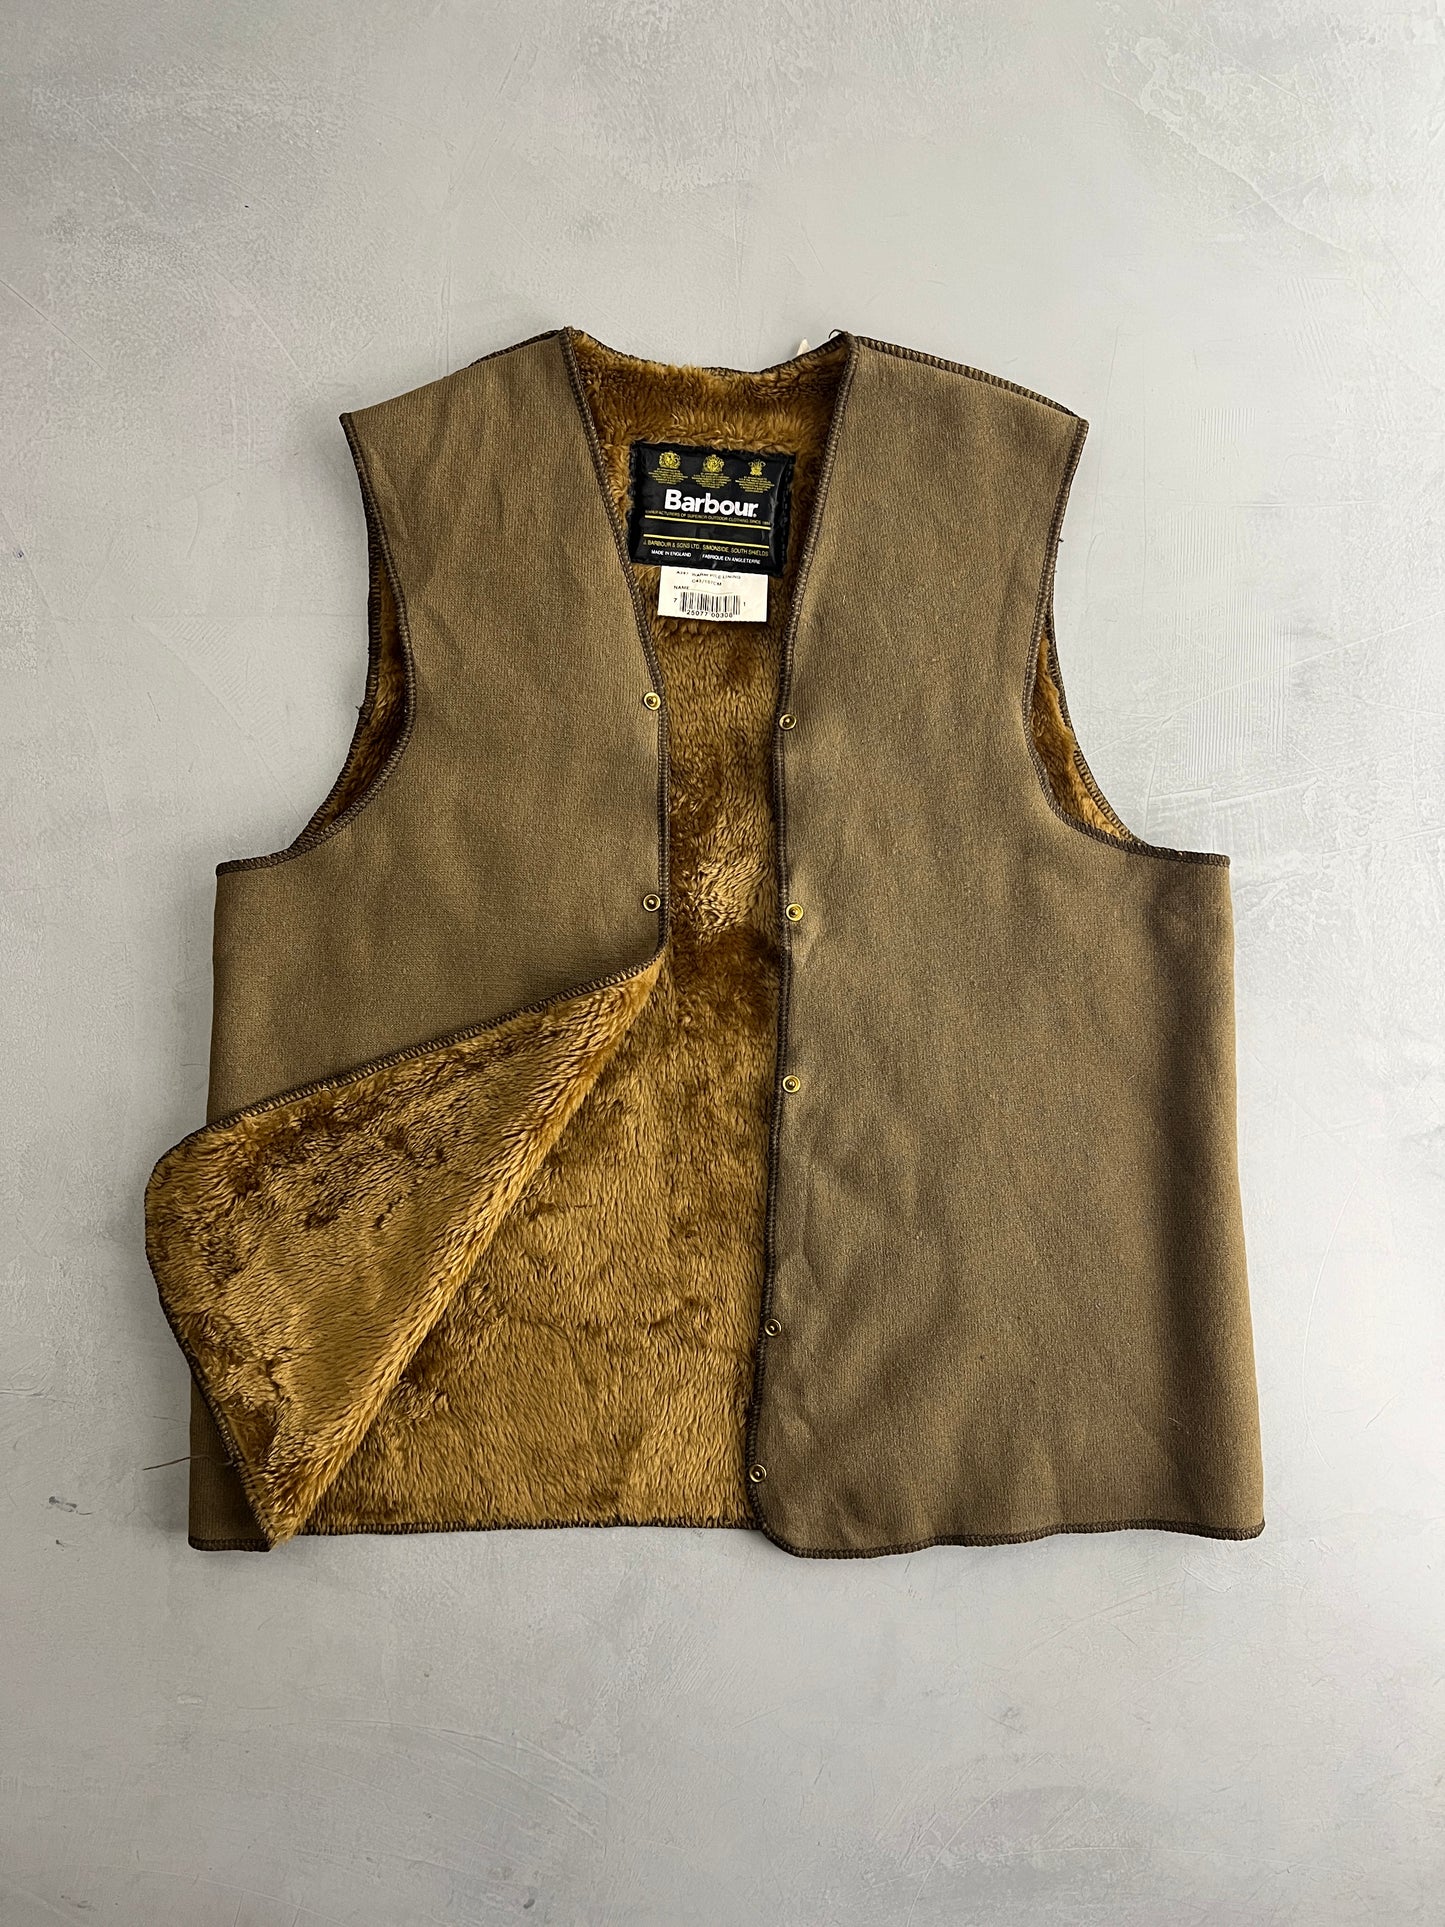 Barbour Beaufort Jacket w Detachable Lining [L]